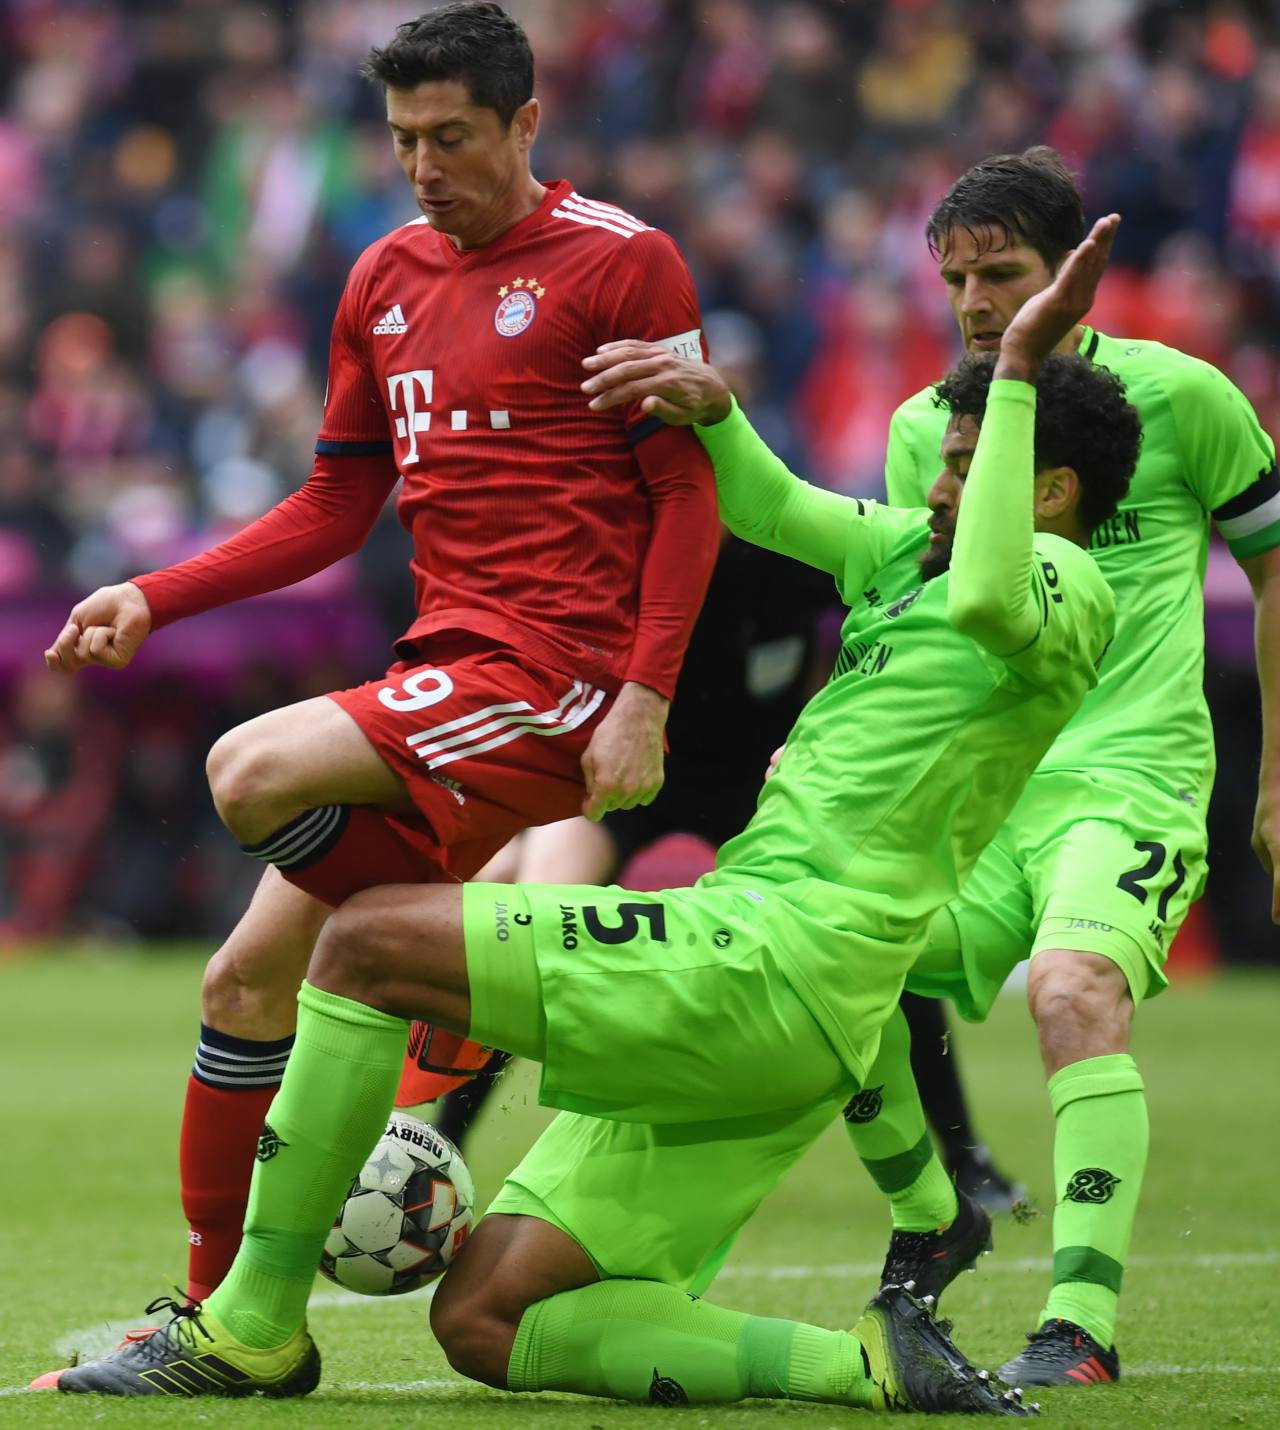 Se abre la Bundesliga: un Bayern bajo presión inaugura contra el Hertha